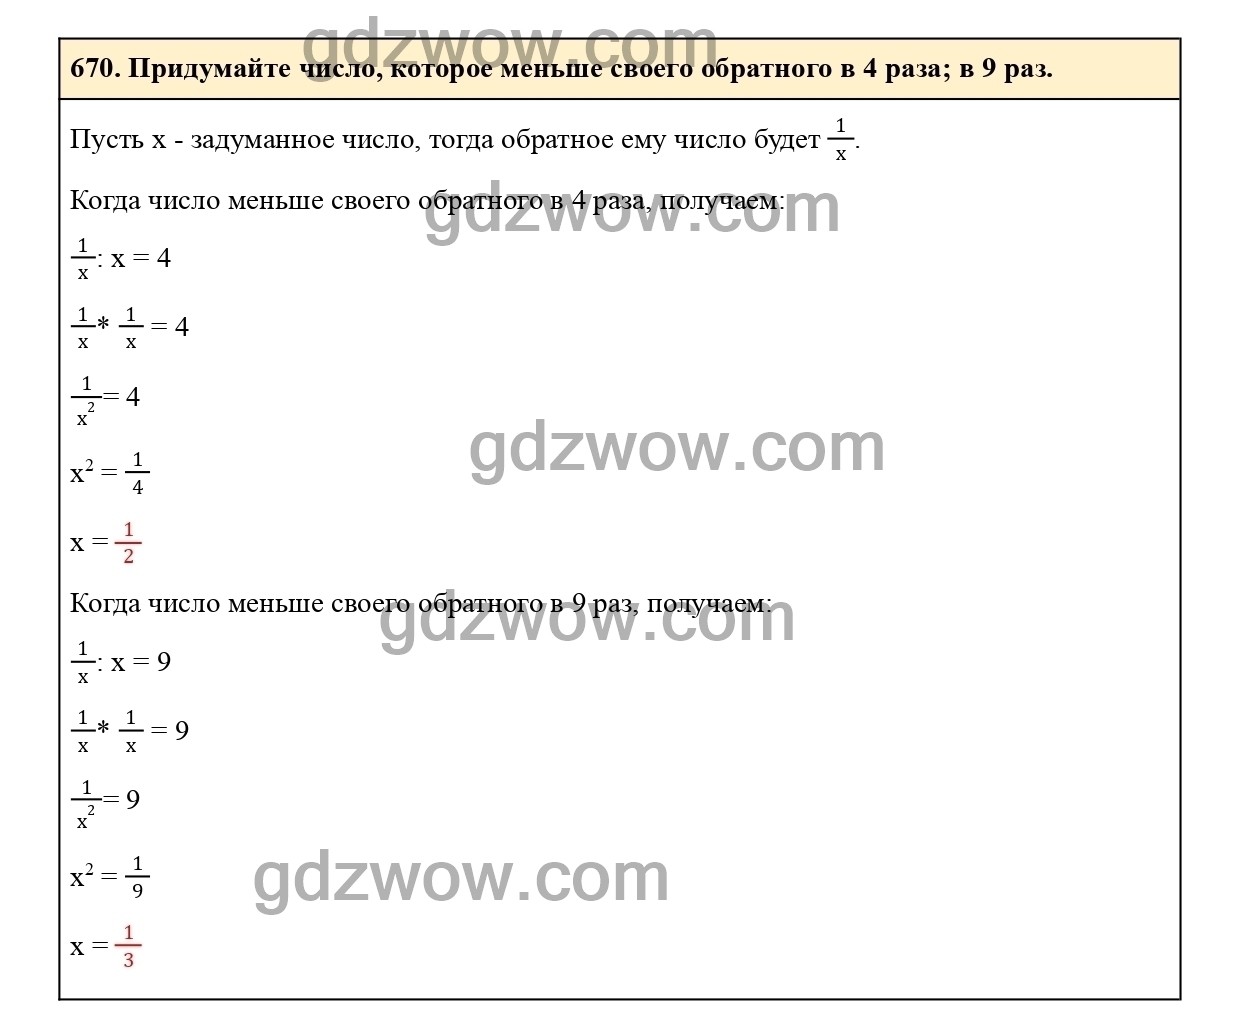 Номер 676 - ГДЗ по Математике 6 класс Учебник Виленкин, Жохов, Чесноков, Шварцбурд 2020. Часть 1 (решебник) - GDZwow